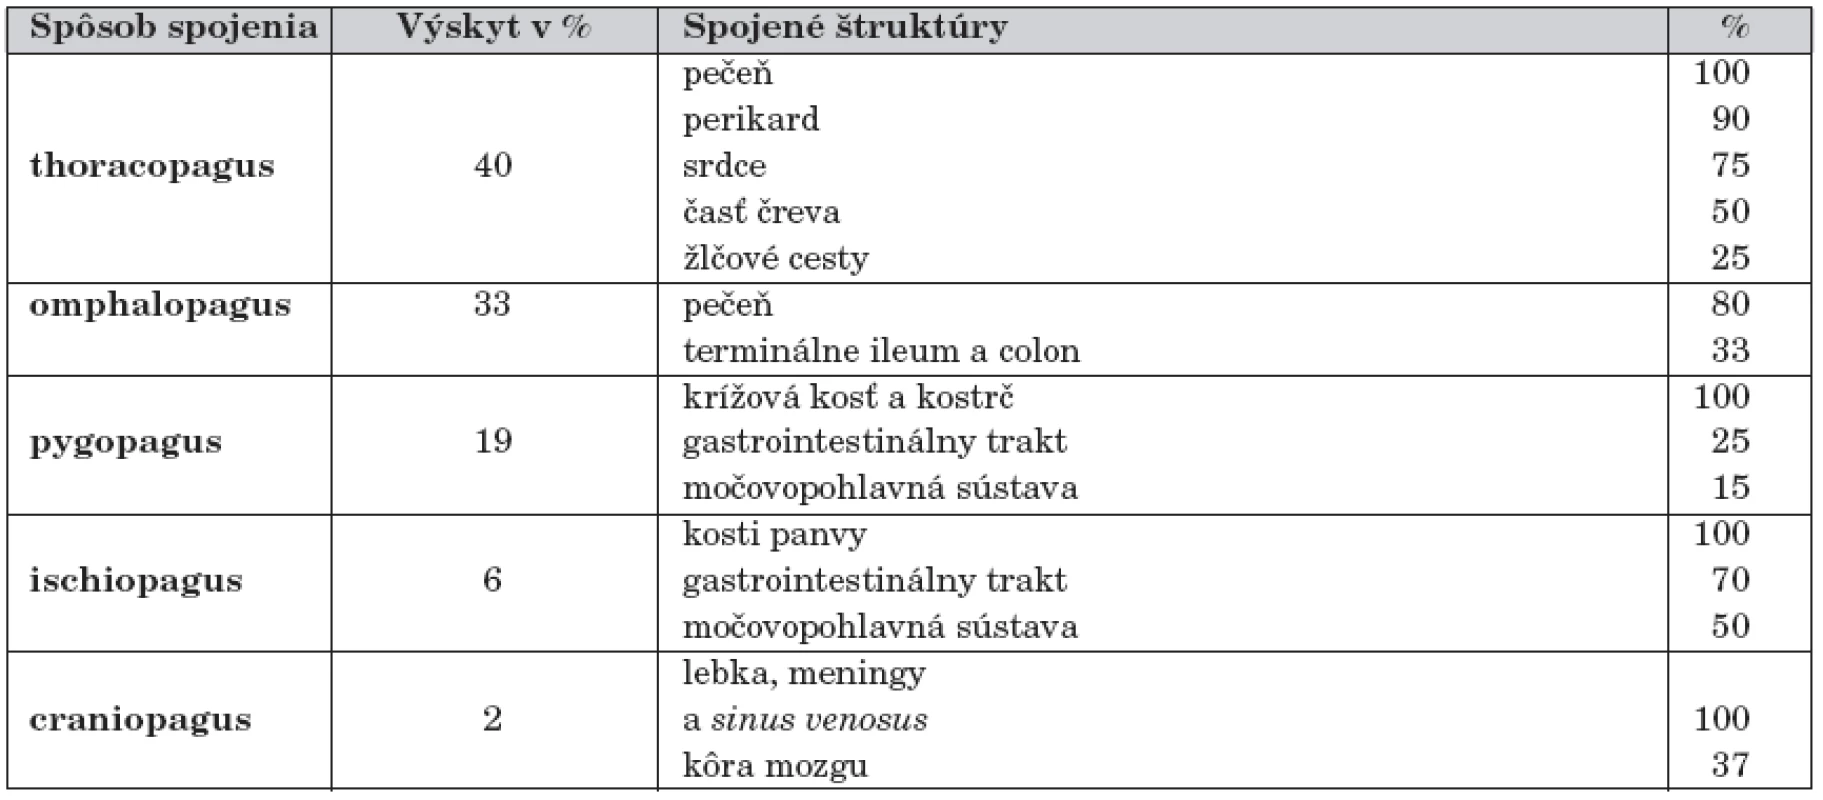 Frekvencia výskytu a spojené štruktúry jednotlivých typov siamských dvojčiat, podľa Spitza [33].